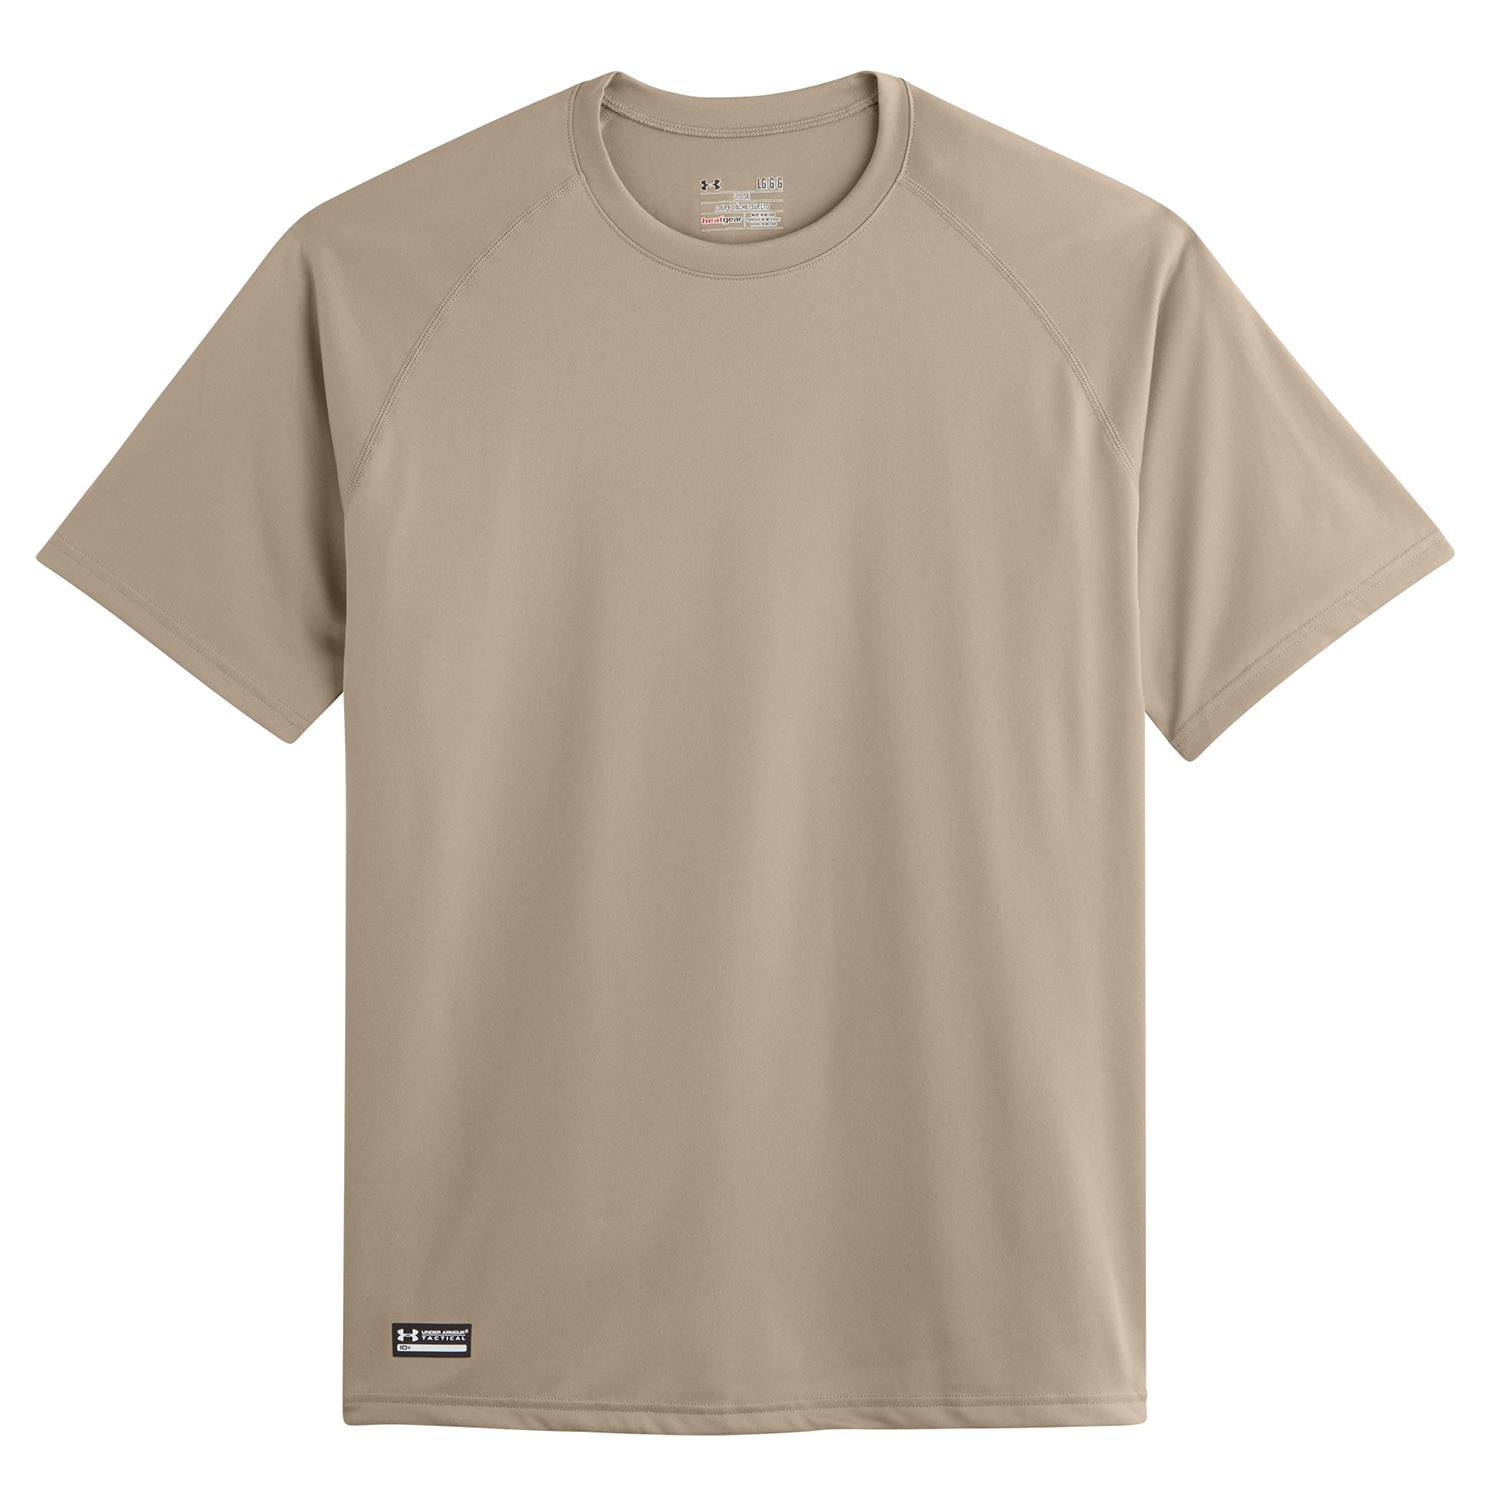 Tactical Tech Short Sleeve T-Shirt